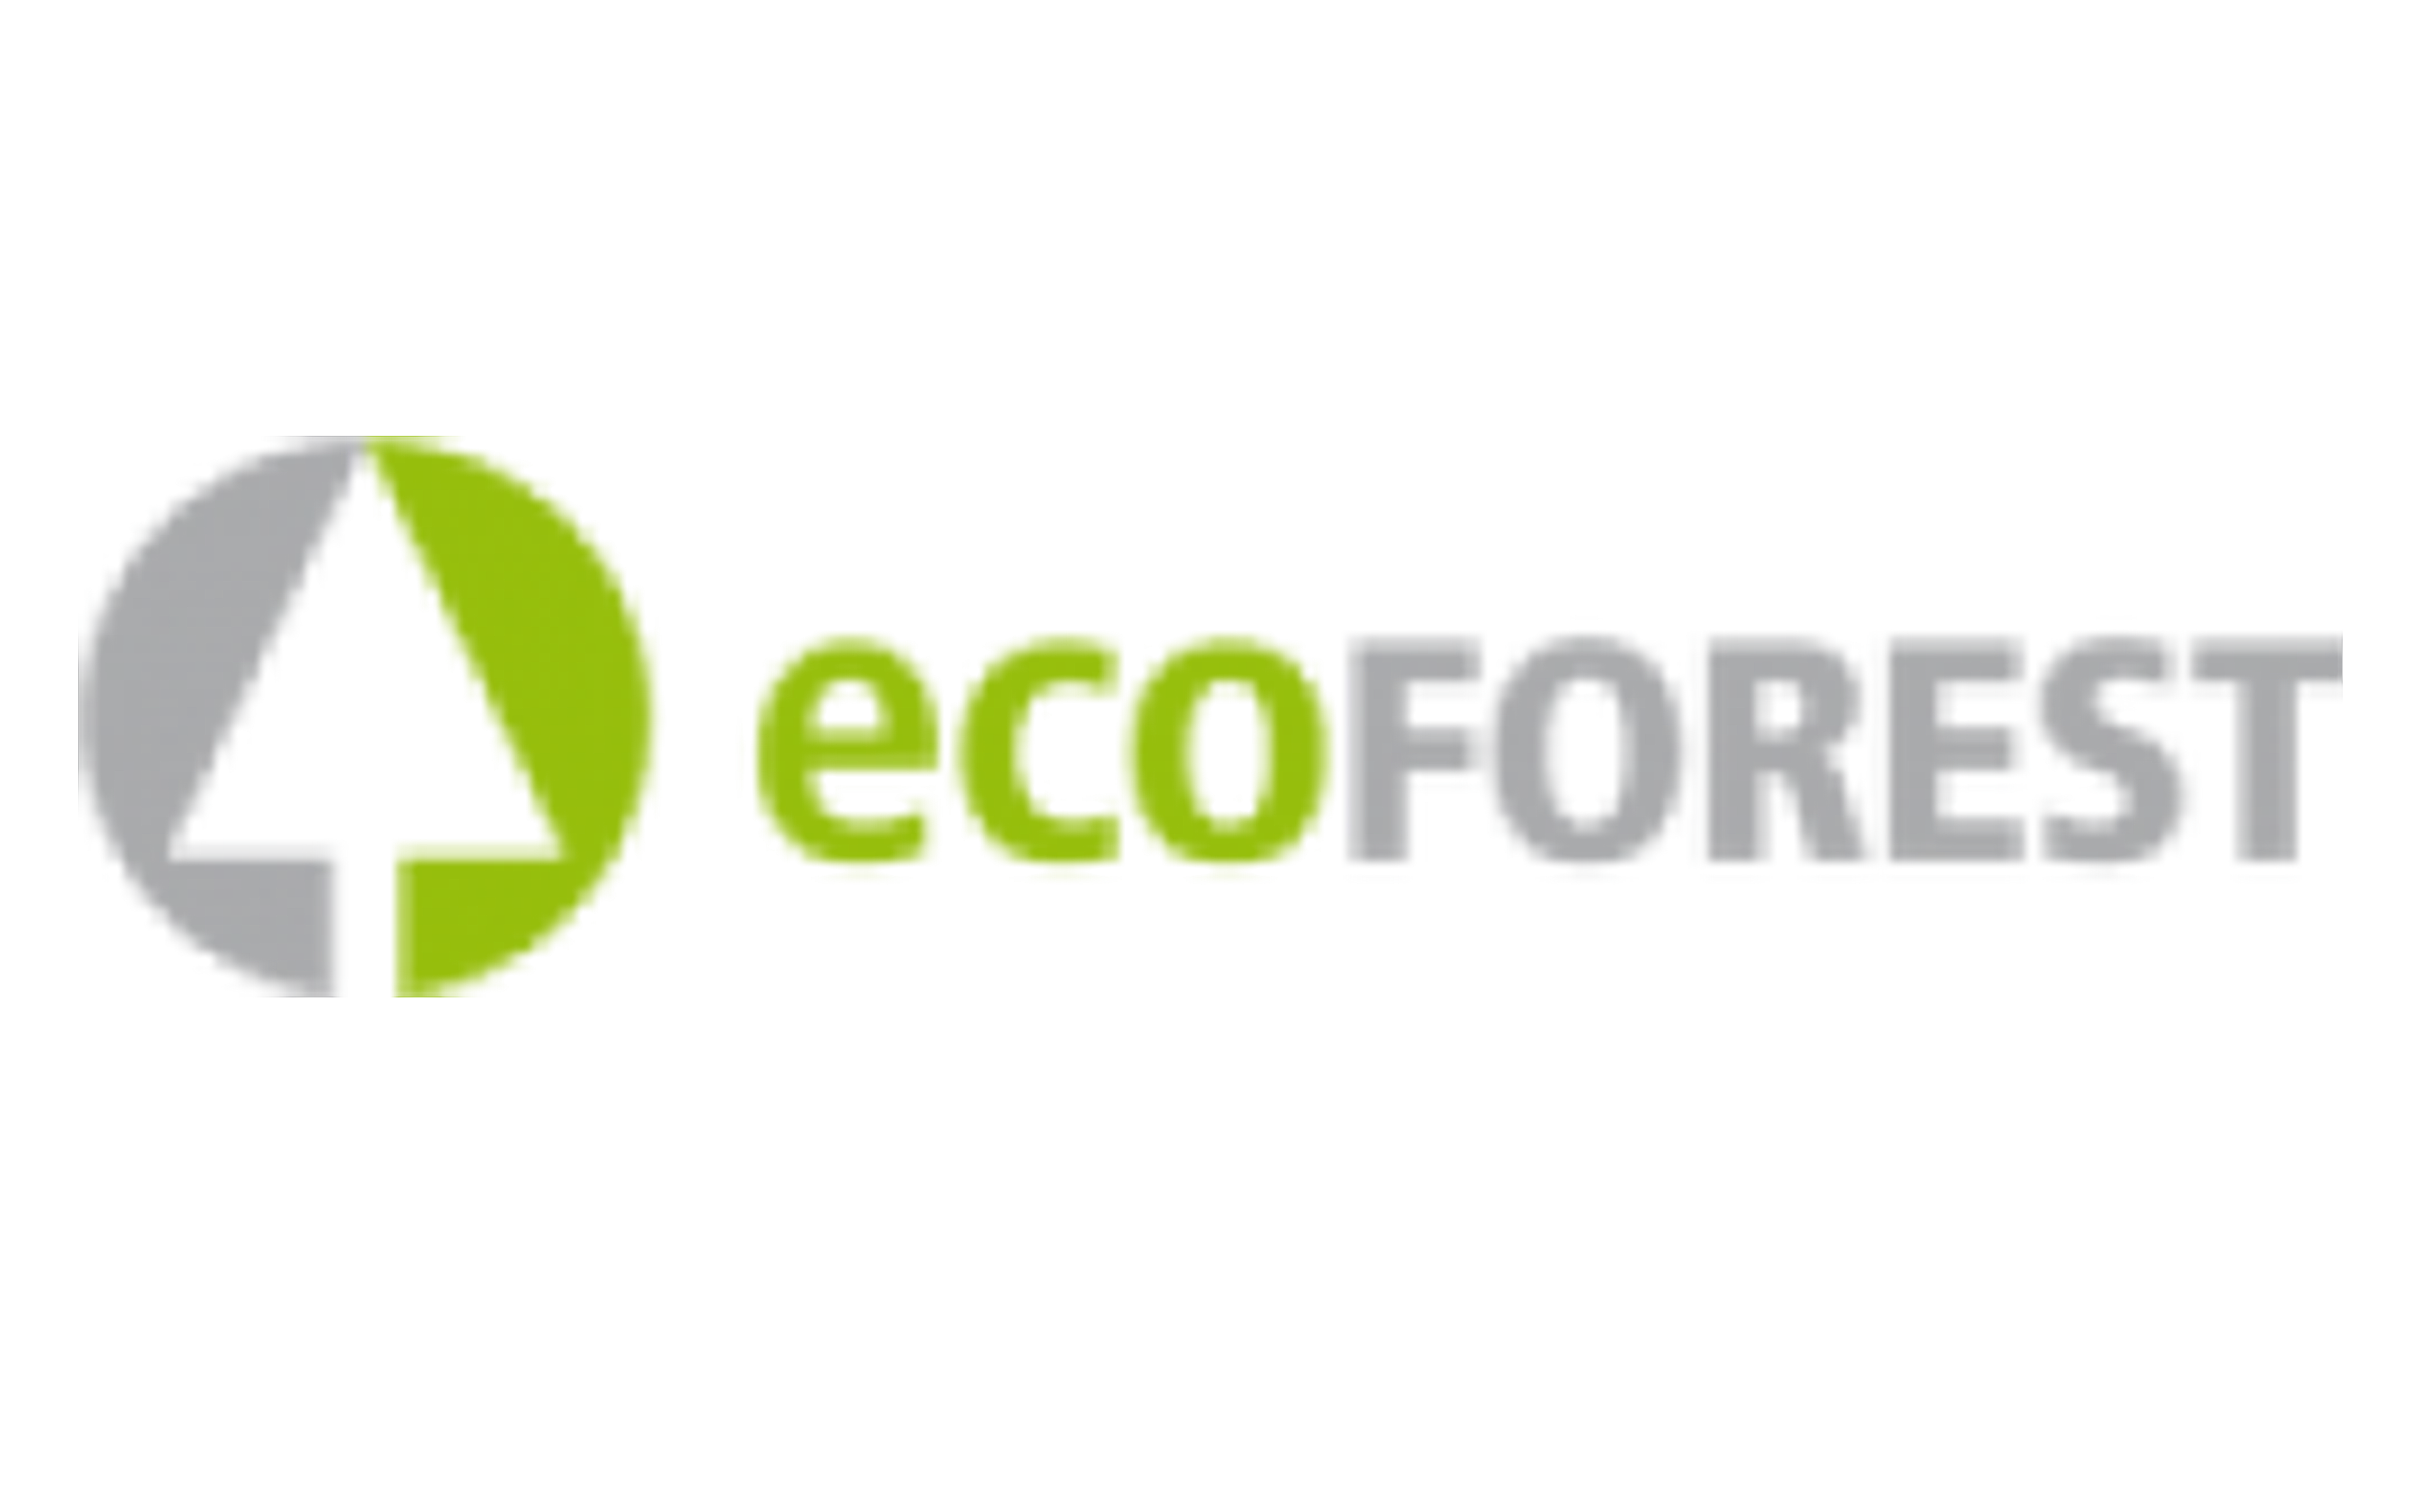 ecoforest